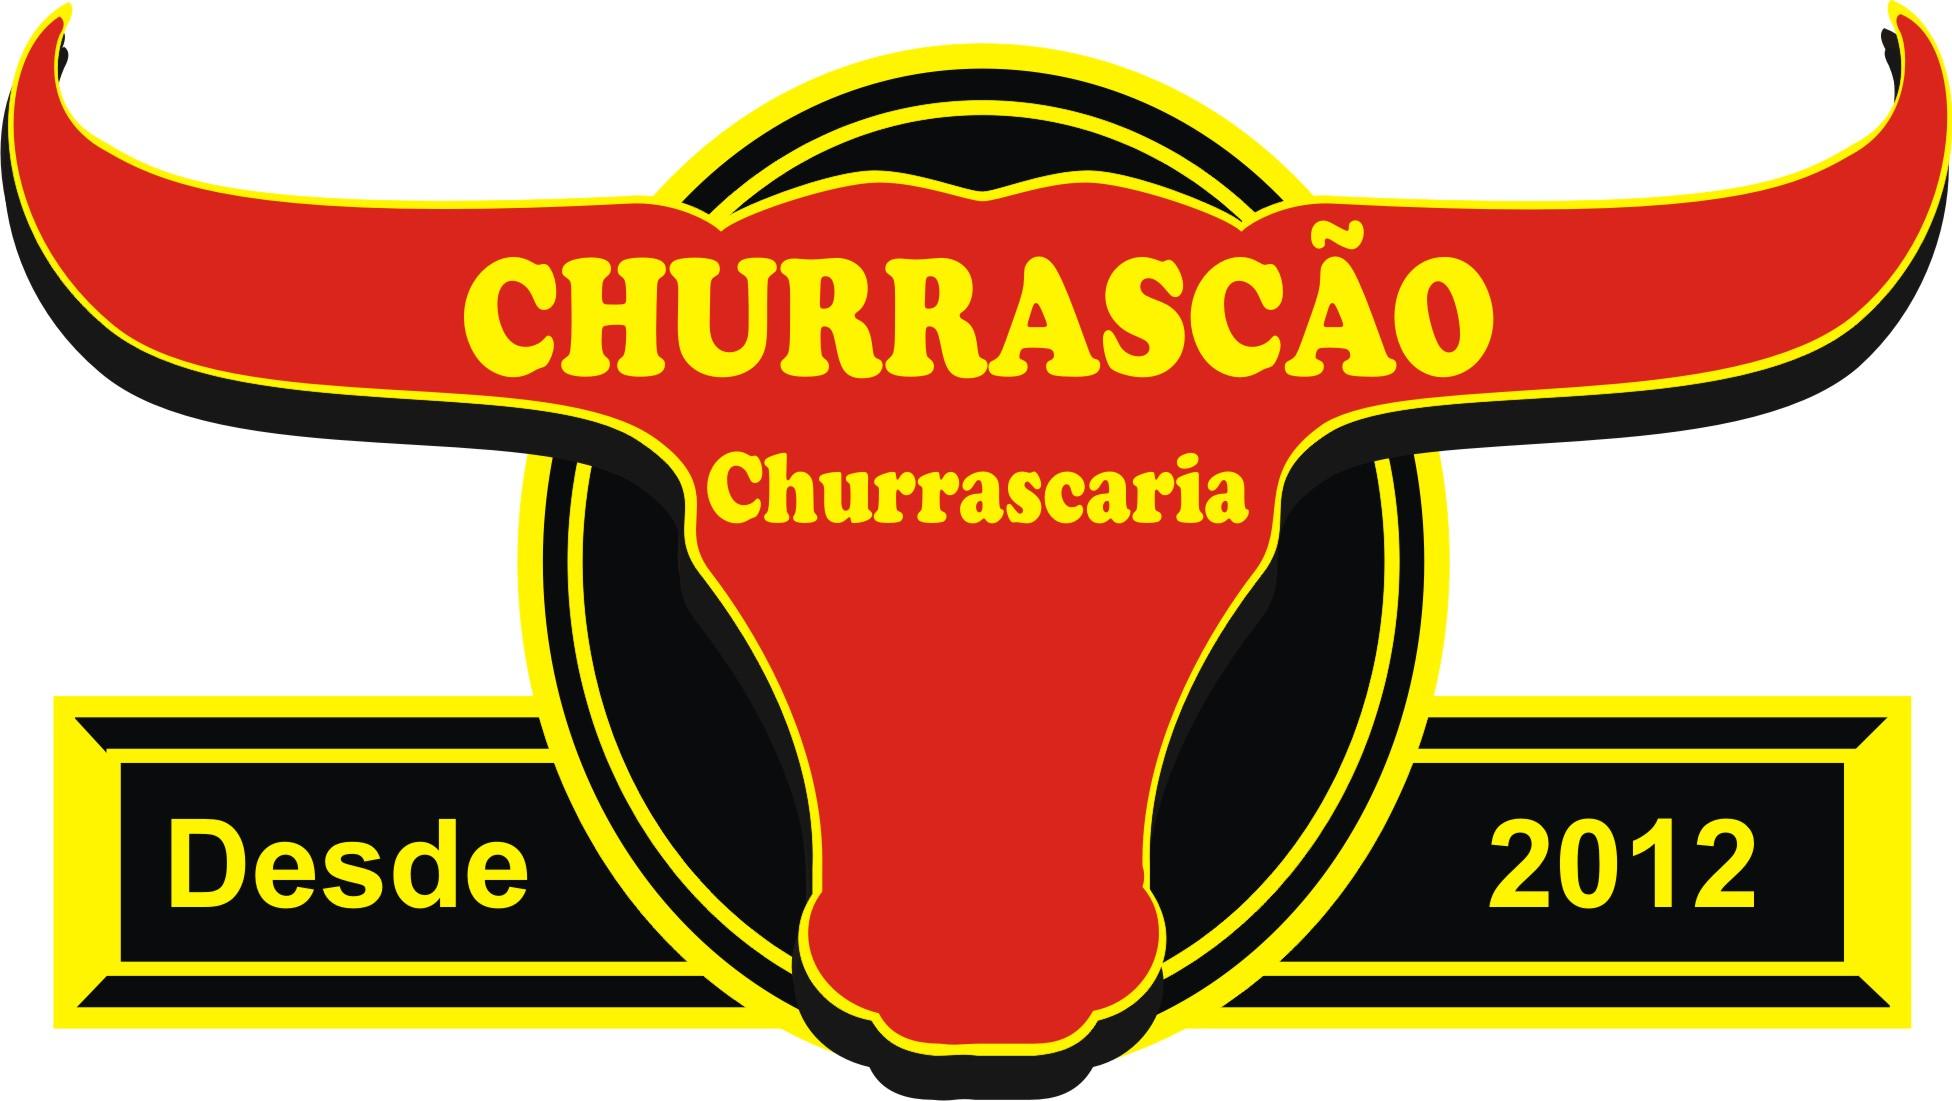 CHURRASCARIA CHURRASCAO